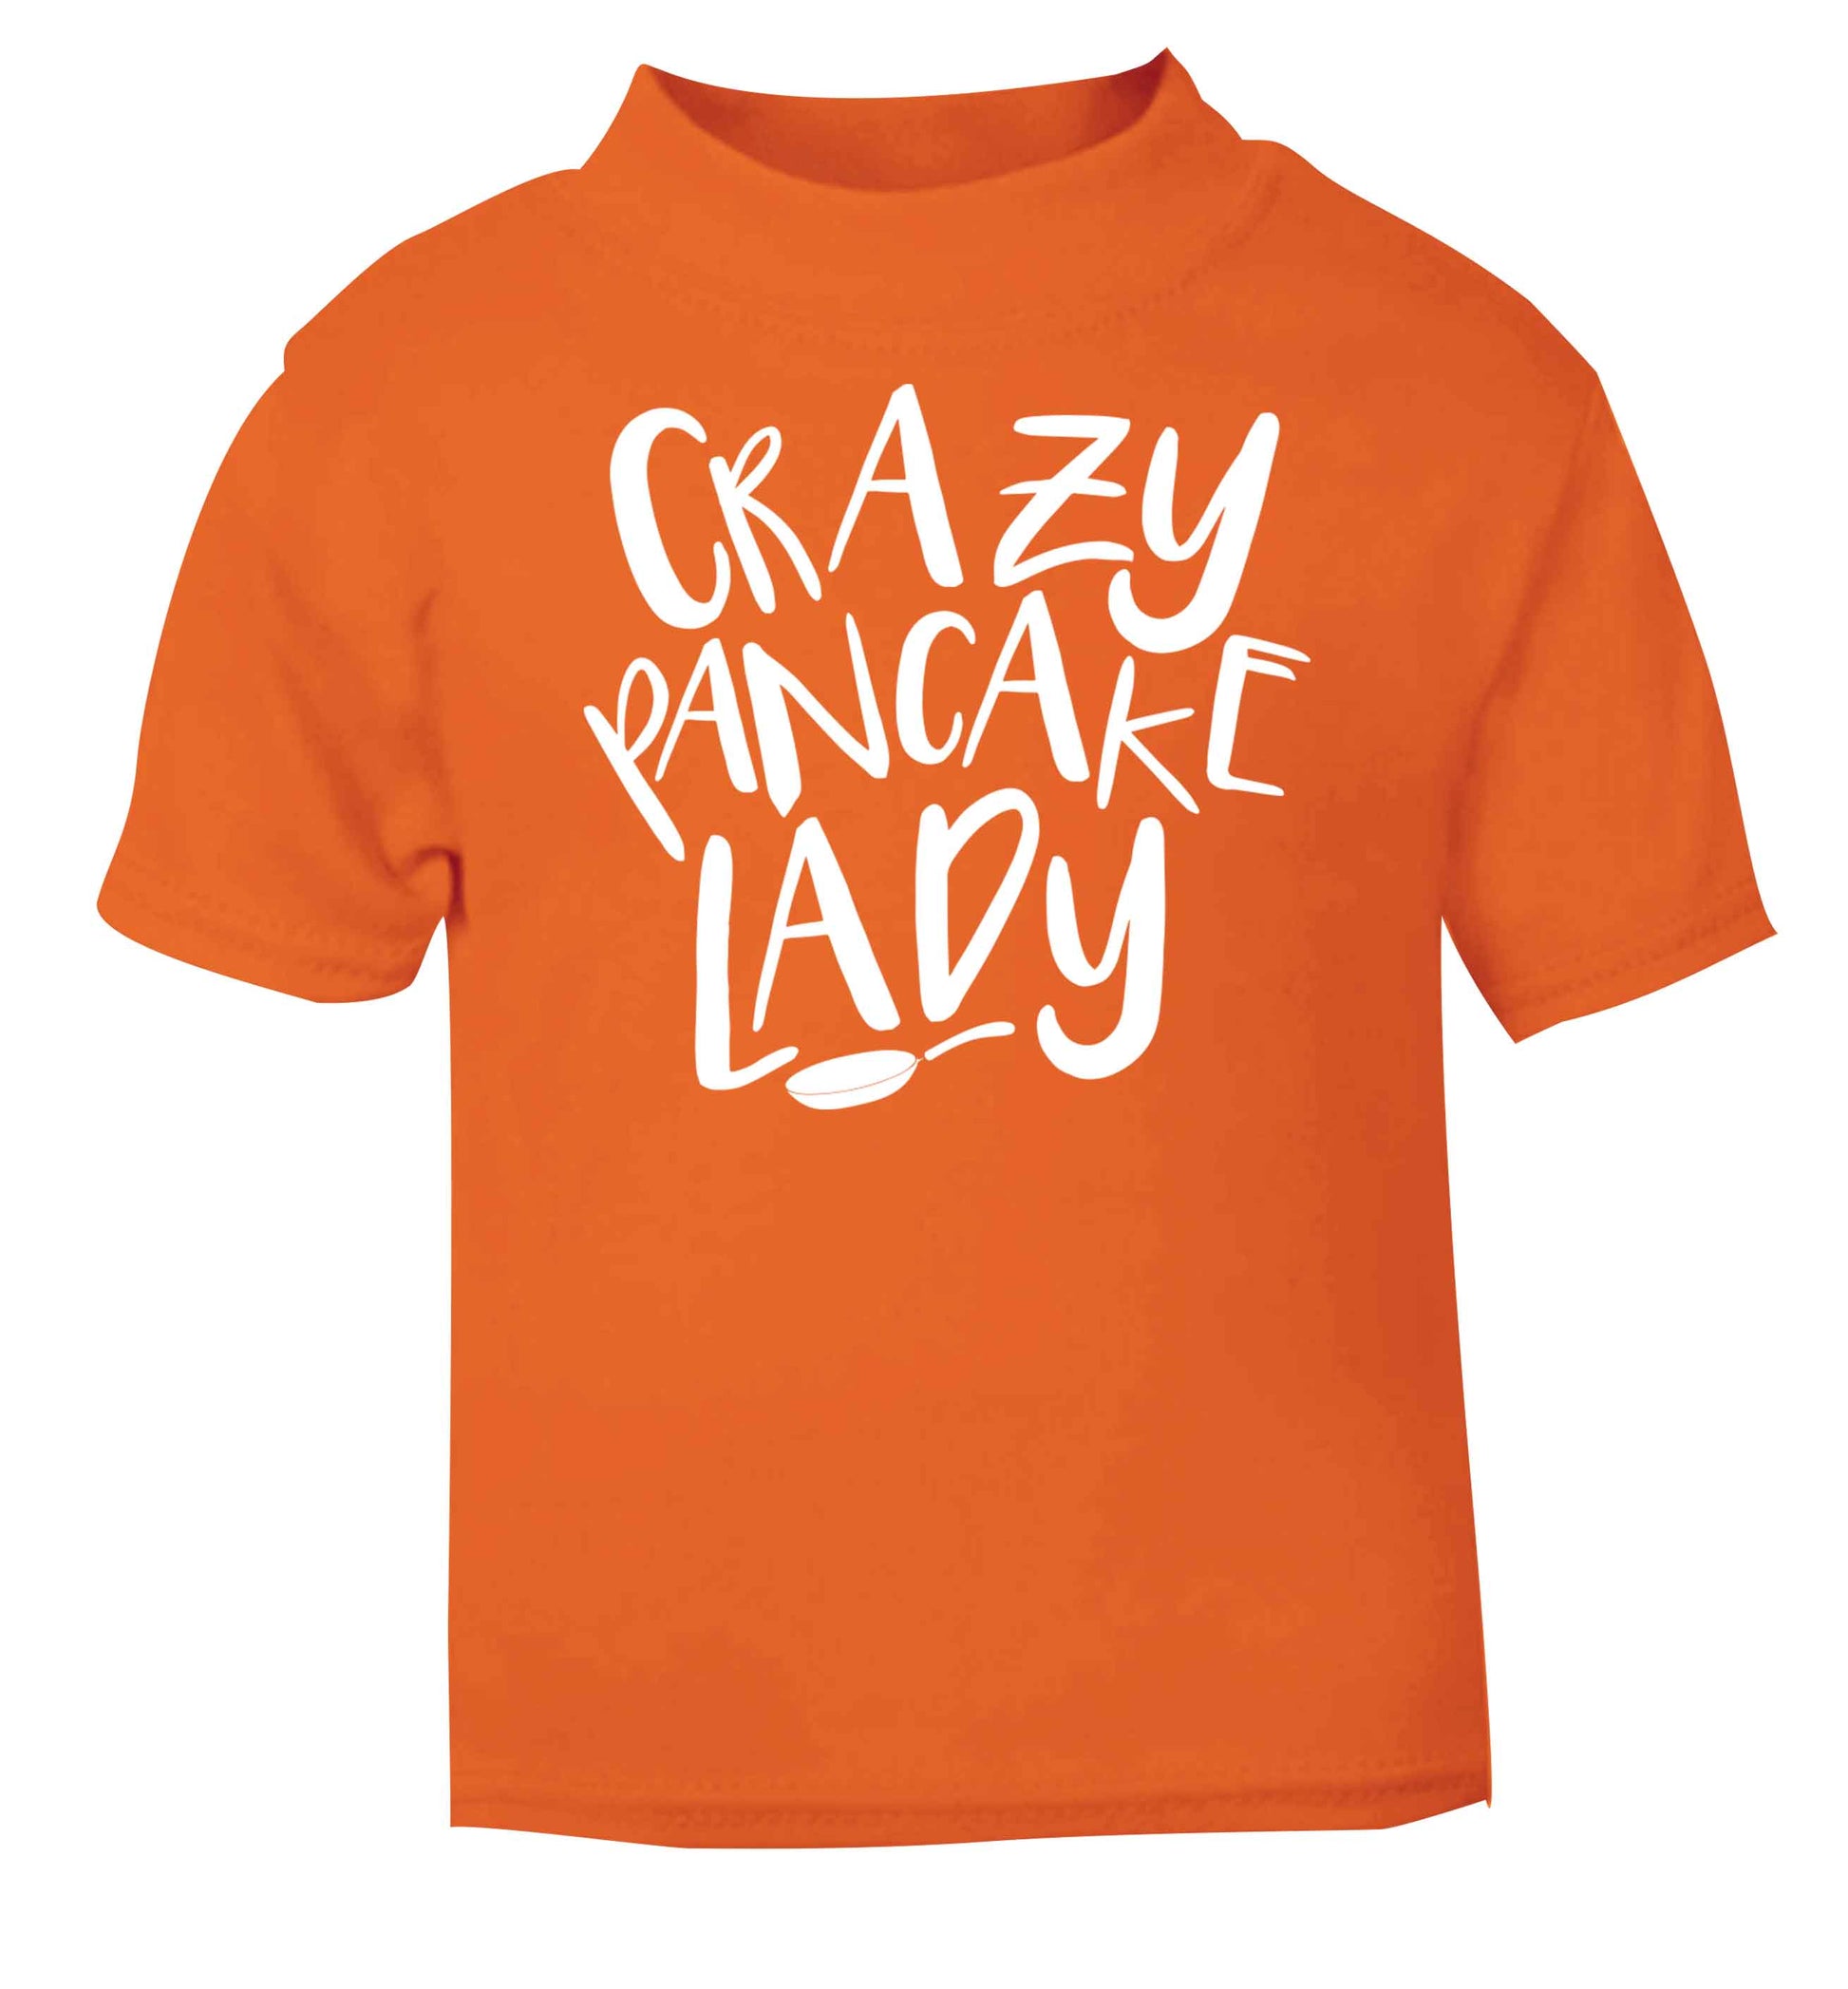 Crazy pancake lady orange baby toddler Tshirt 2 Years